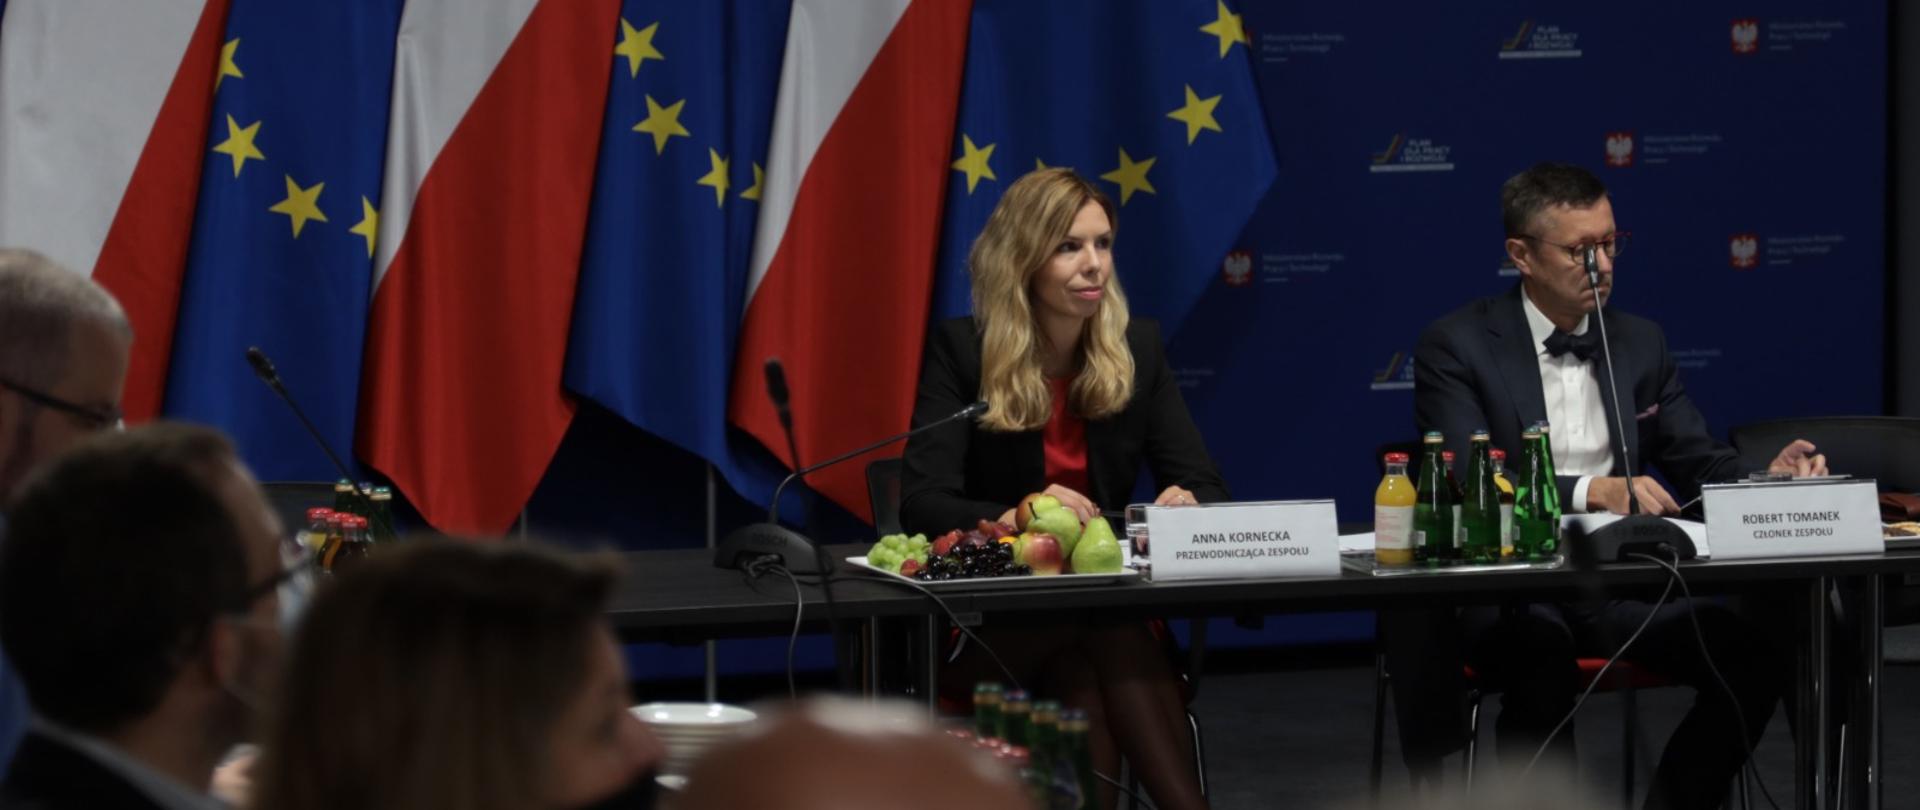 Wiceminister Anna Kornecka za stołem podczas posiedzenia zespołu. Obok wiceminister Robert Tomanek.